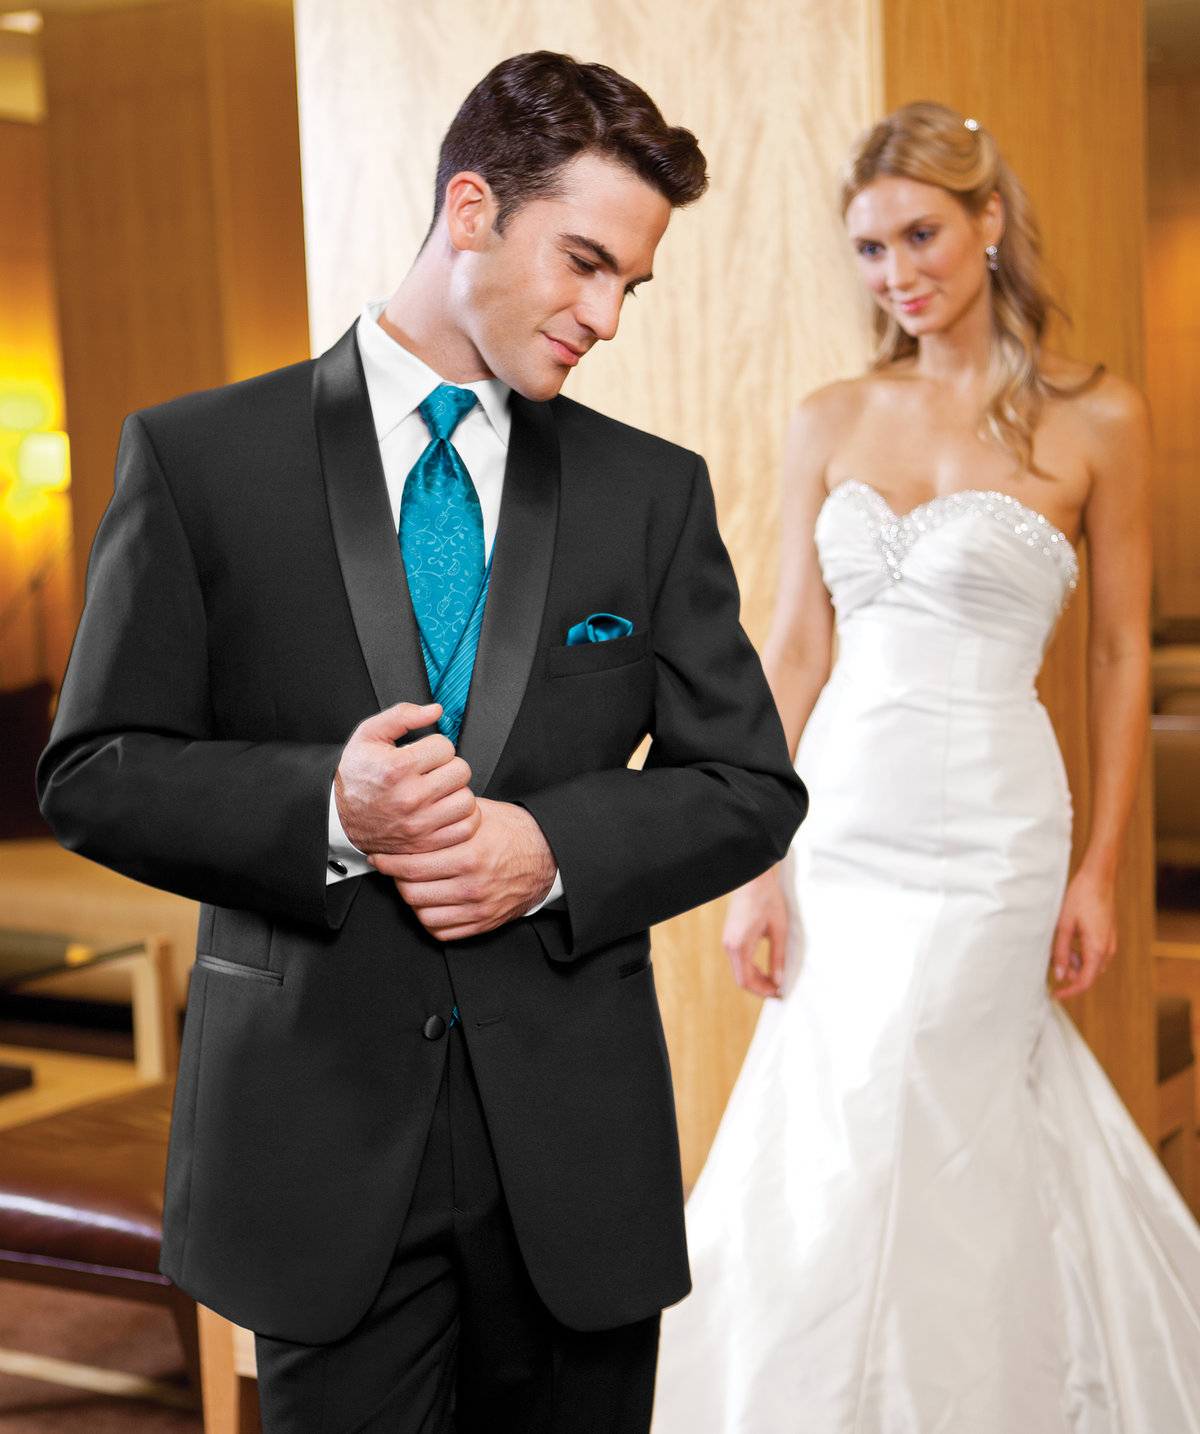 Брючные костюмы на свадьбу: главные правила выбора